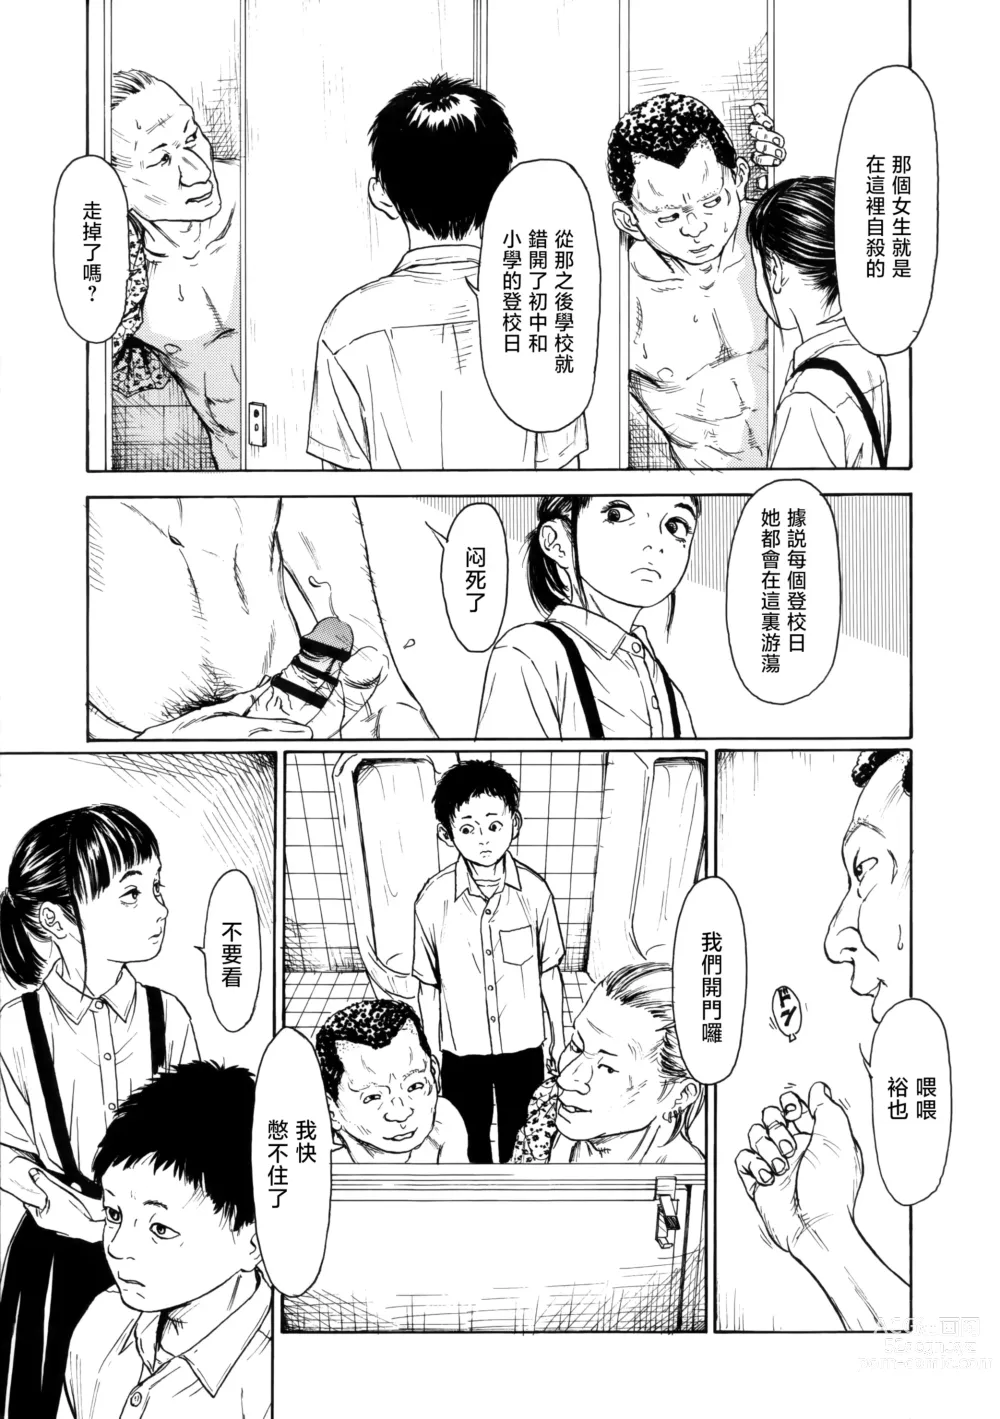 Page 9 of manga Hanako to Tarou no Natsuyasumi